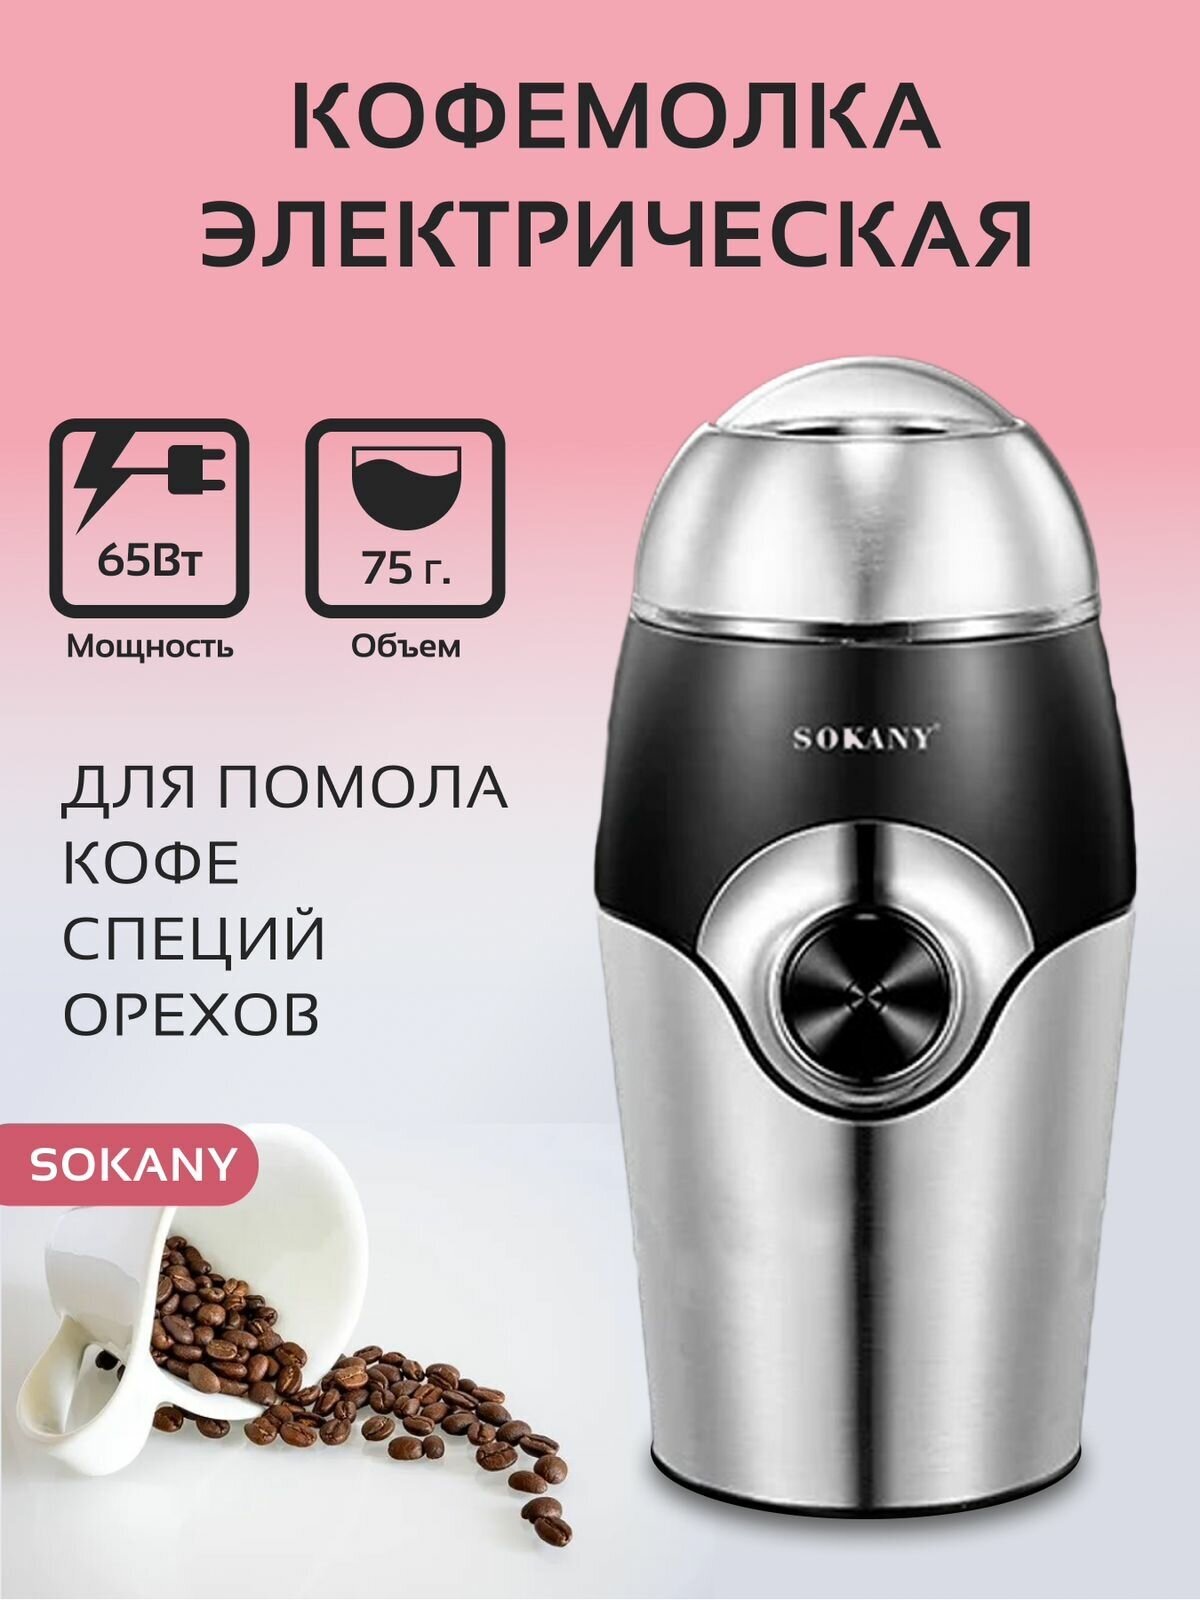 Кофемолка электрическая SOKANY